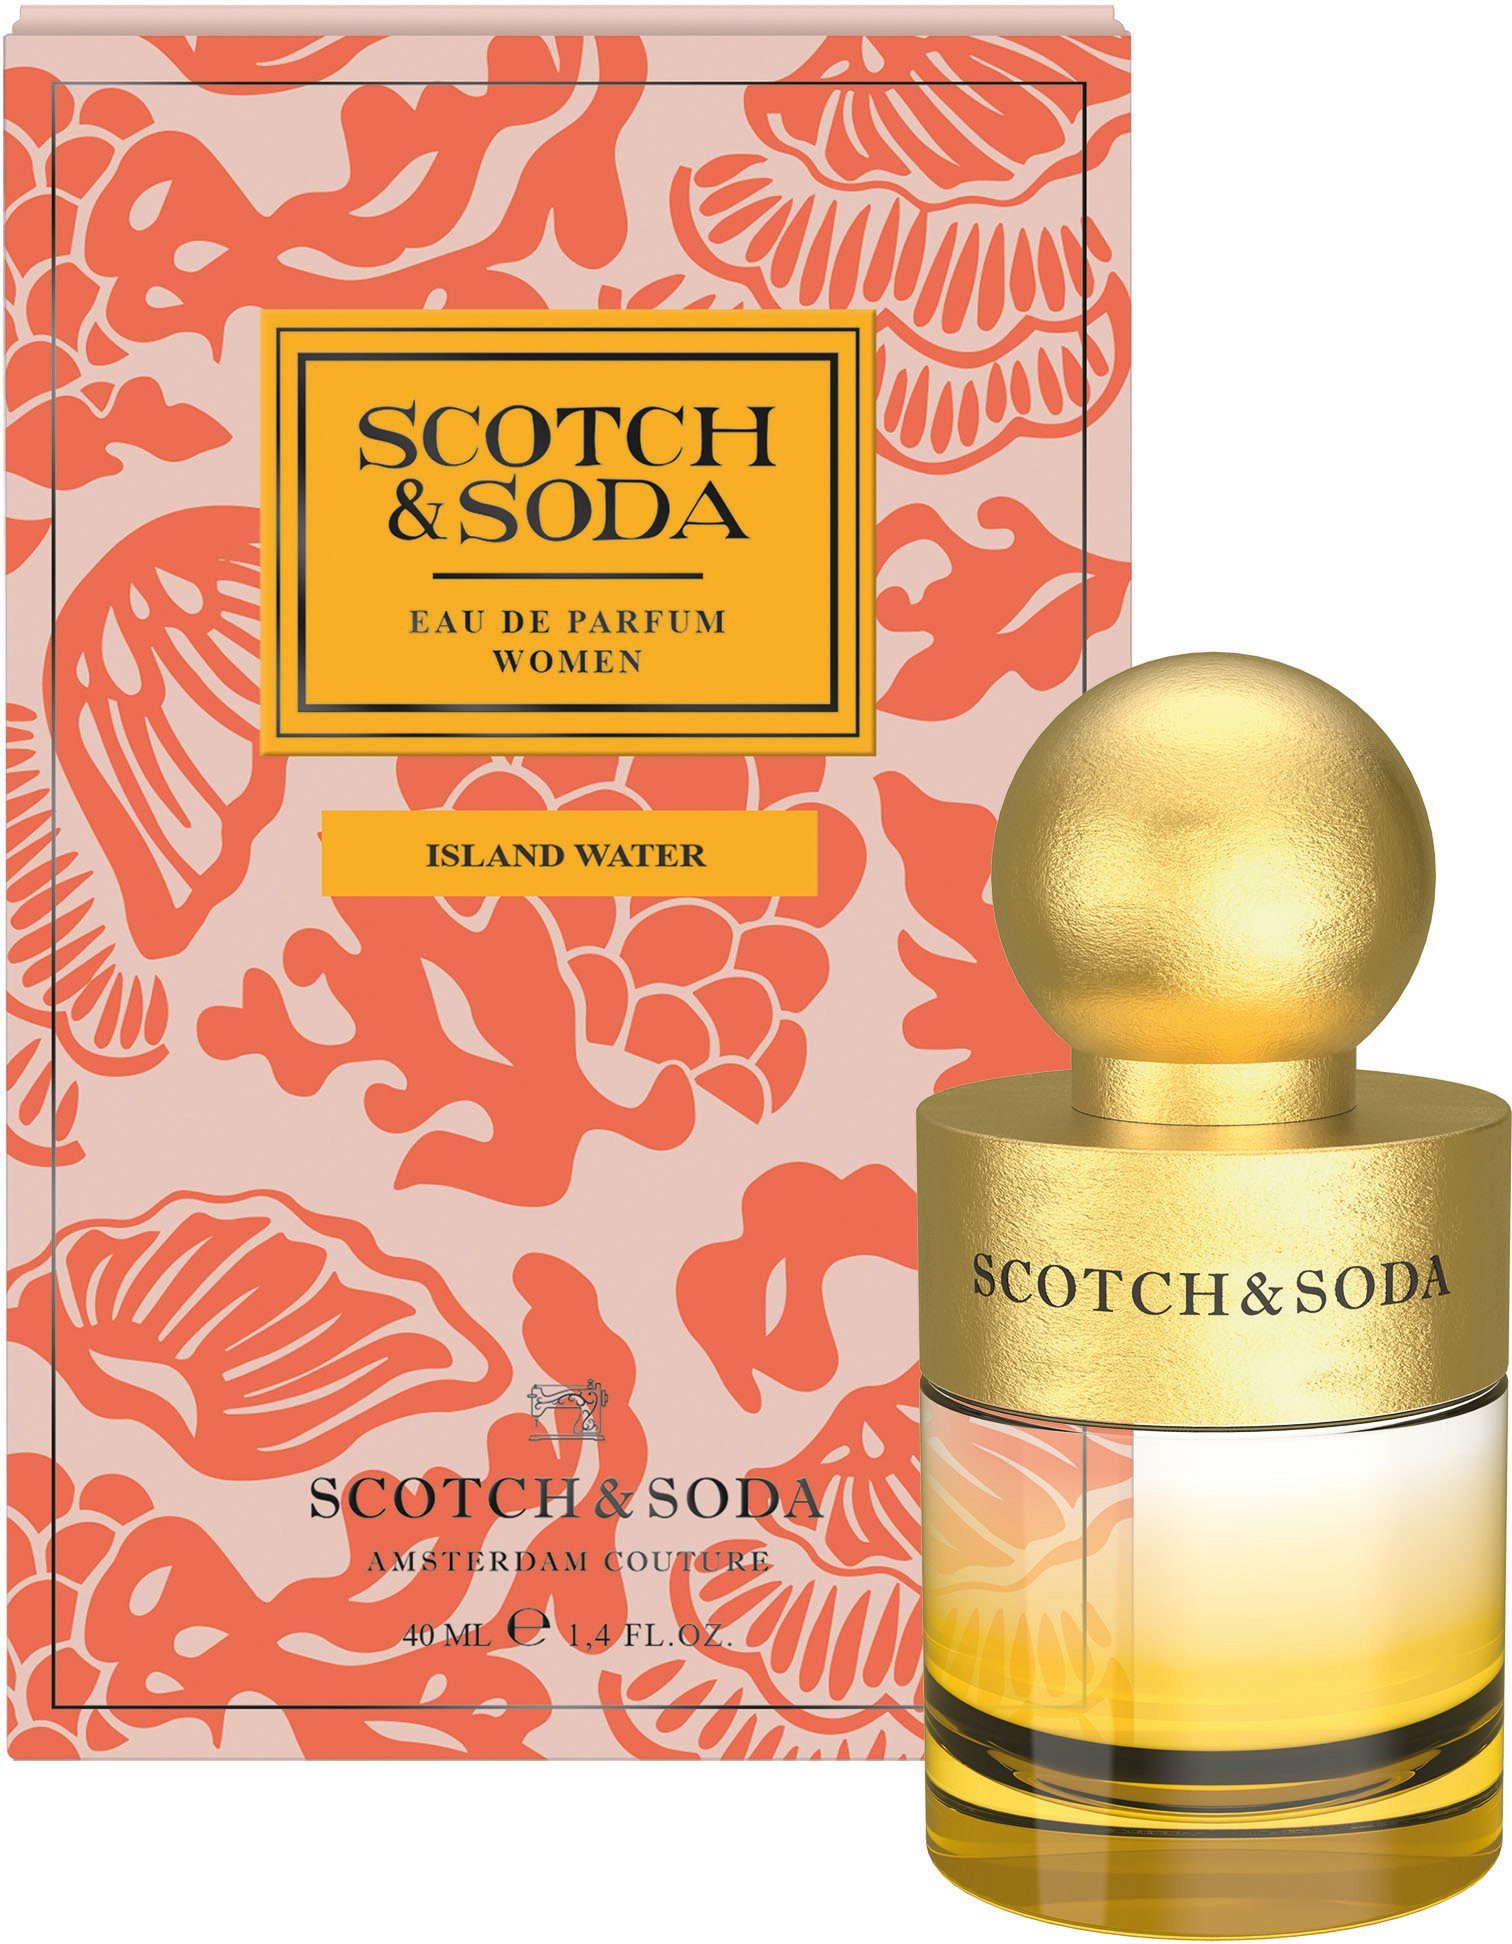 Scotch Parfum Water Women Island Soda Eau & de